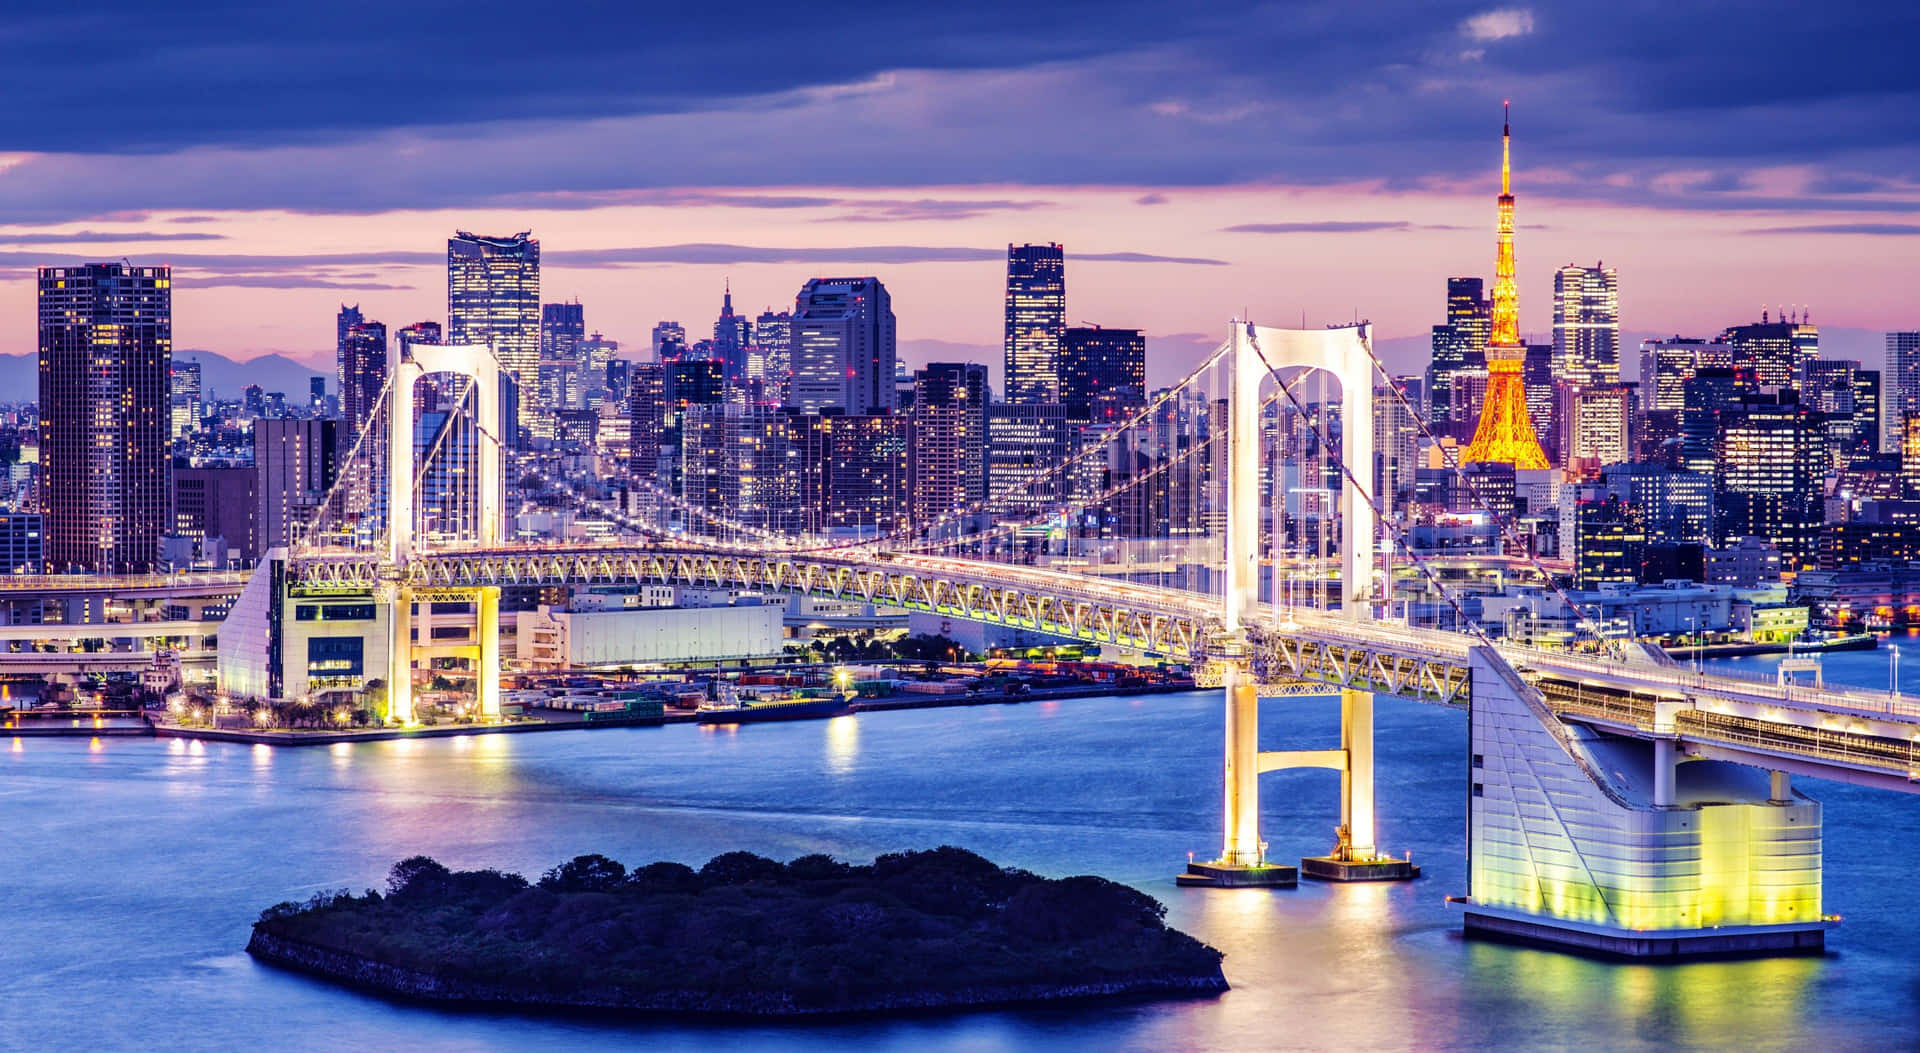 Unavista Dell'iconico Ponte Arcobaleno Che Collega Tokyo E Odaiba, In Giappone.